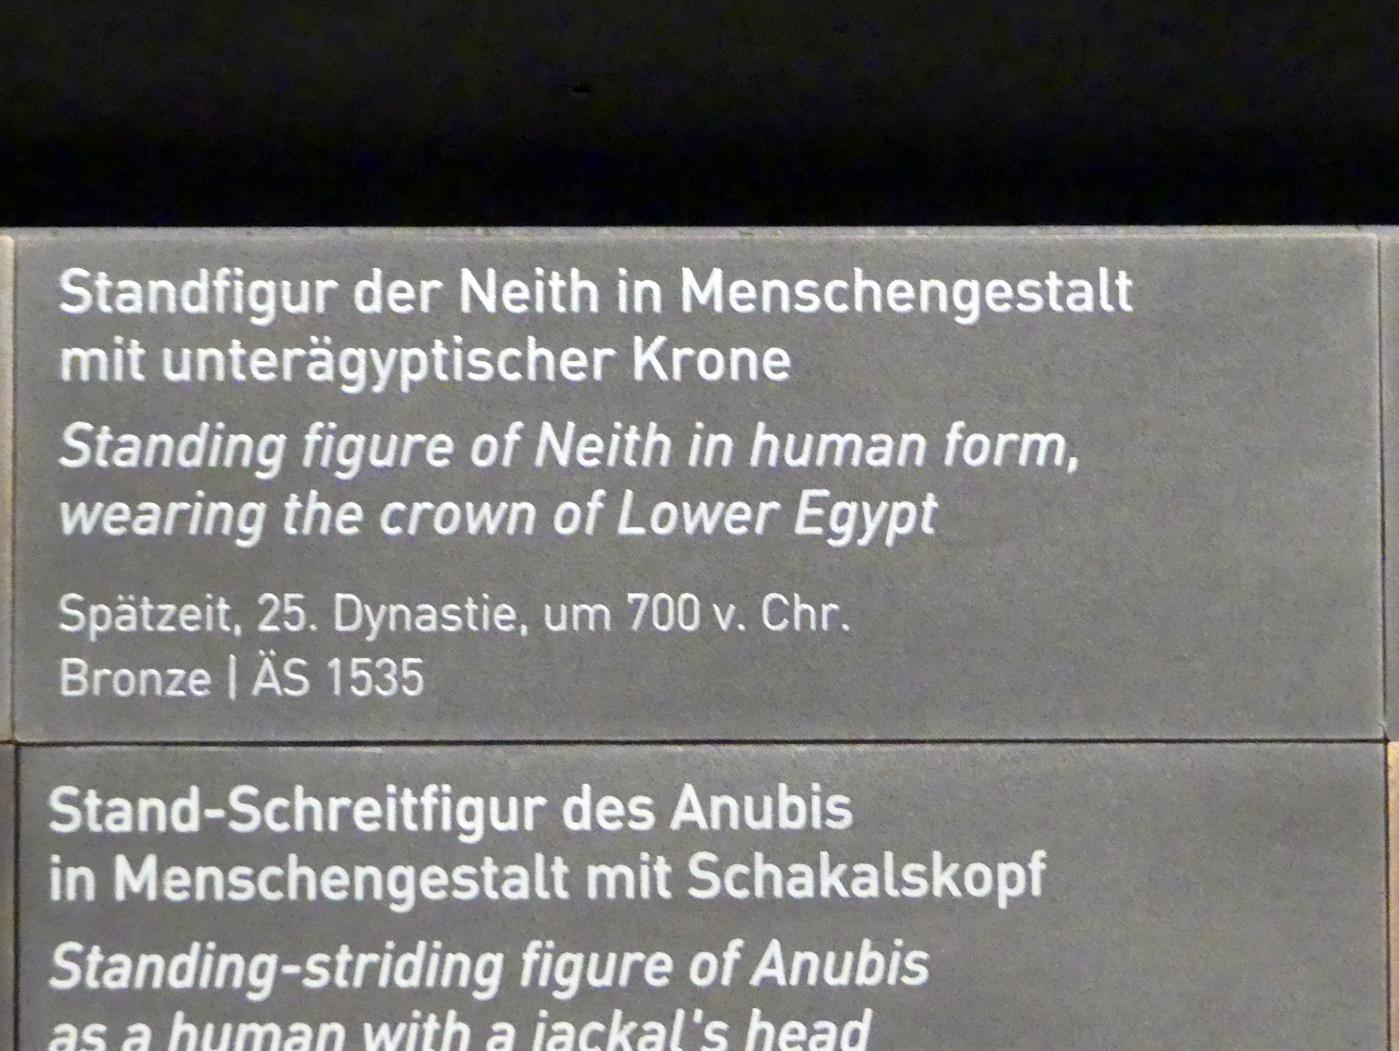 Standfigur der Neith in Menschengestalt mit unterägyptischer Krone, 25. Dynastie, 705 - 690 v. Chr., 700 v. Chr., Bild 3/3